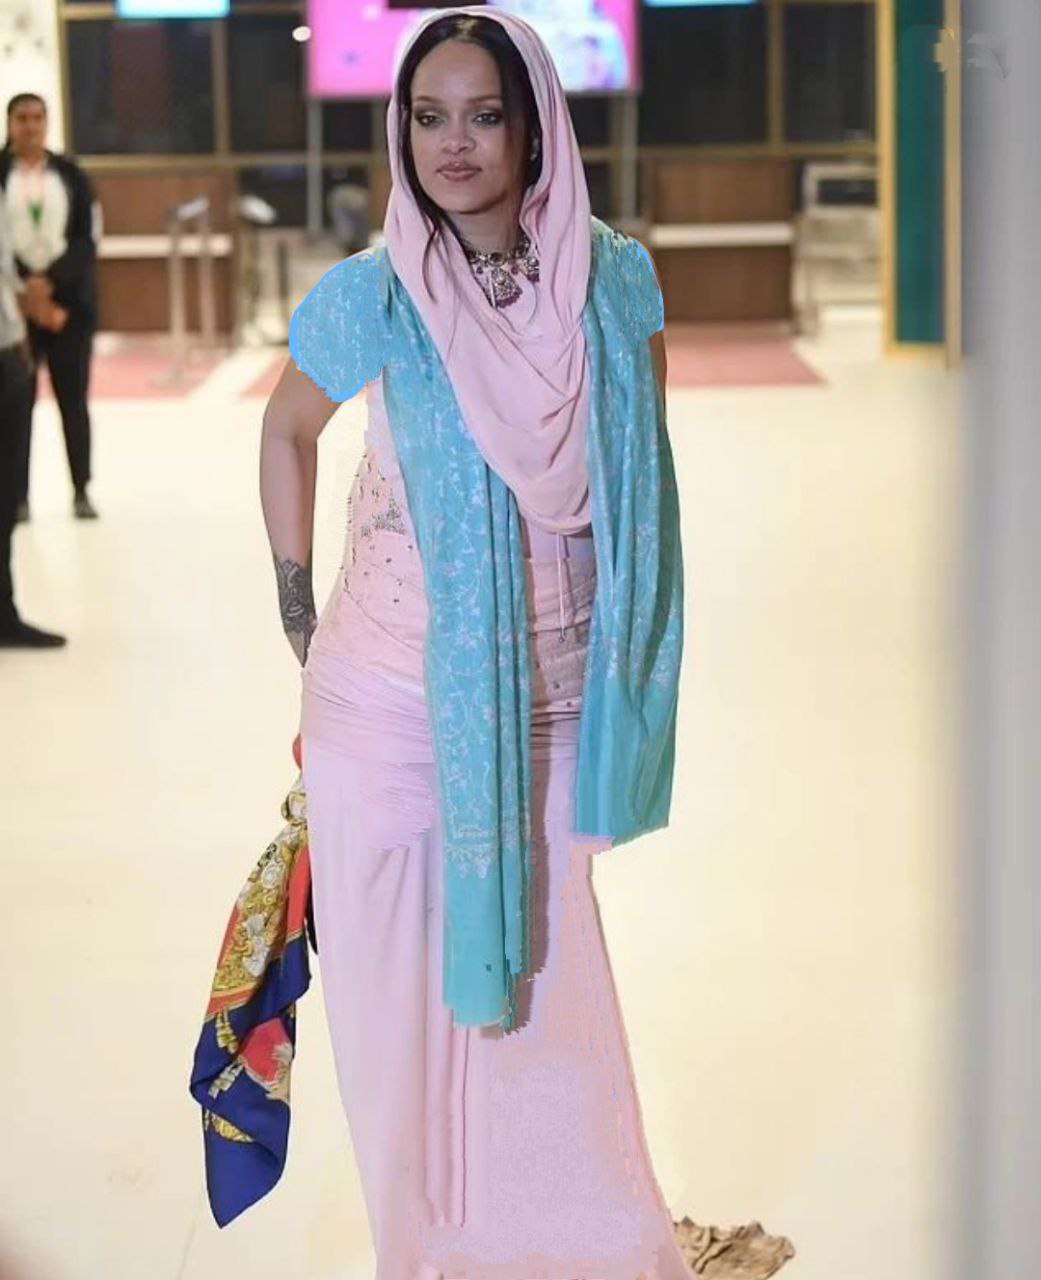 عکس جدید ریانا با لباس هندی و حجاب حسابی پربازدید شد